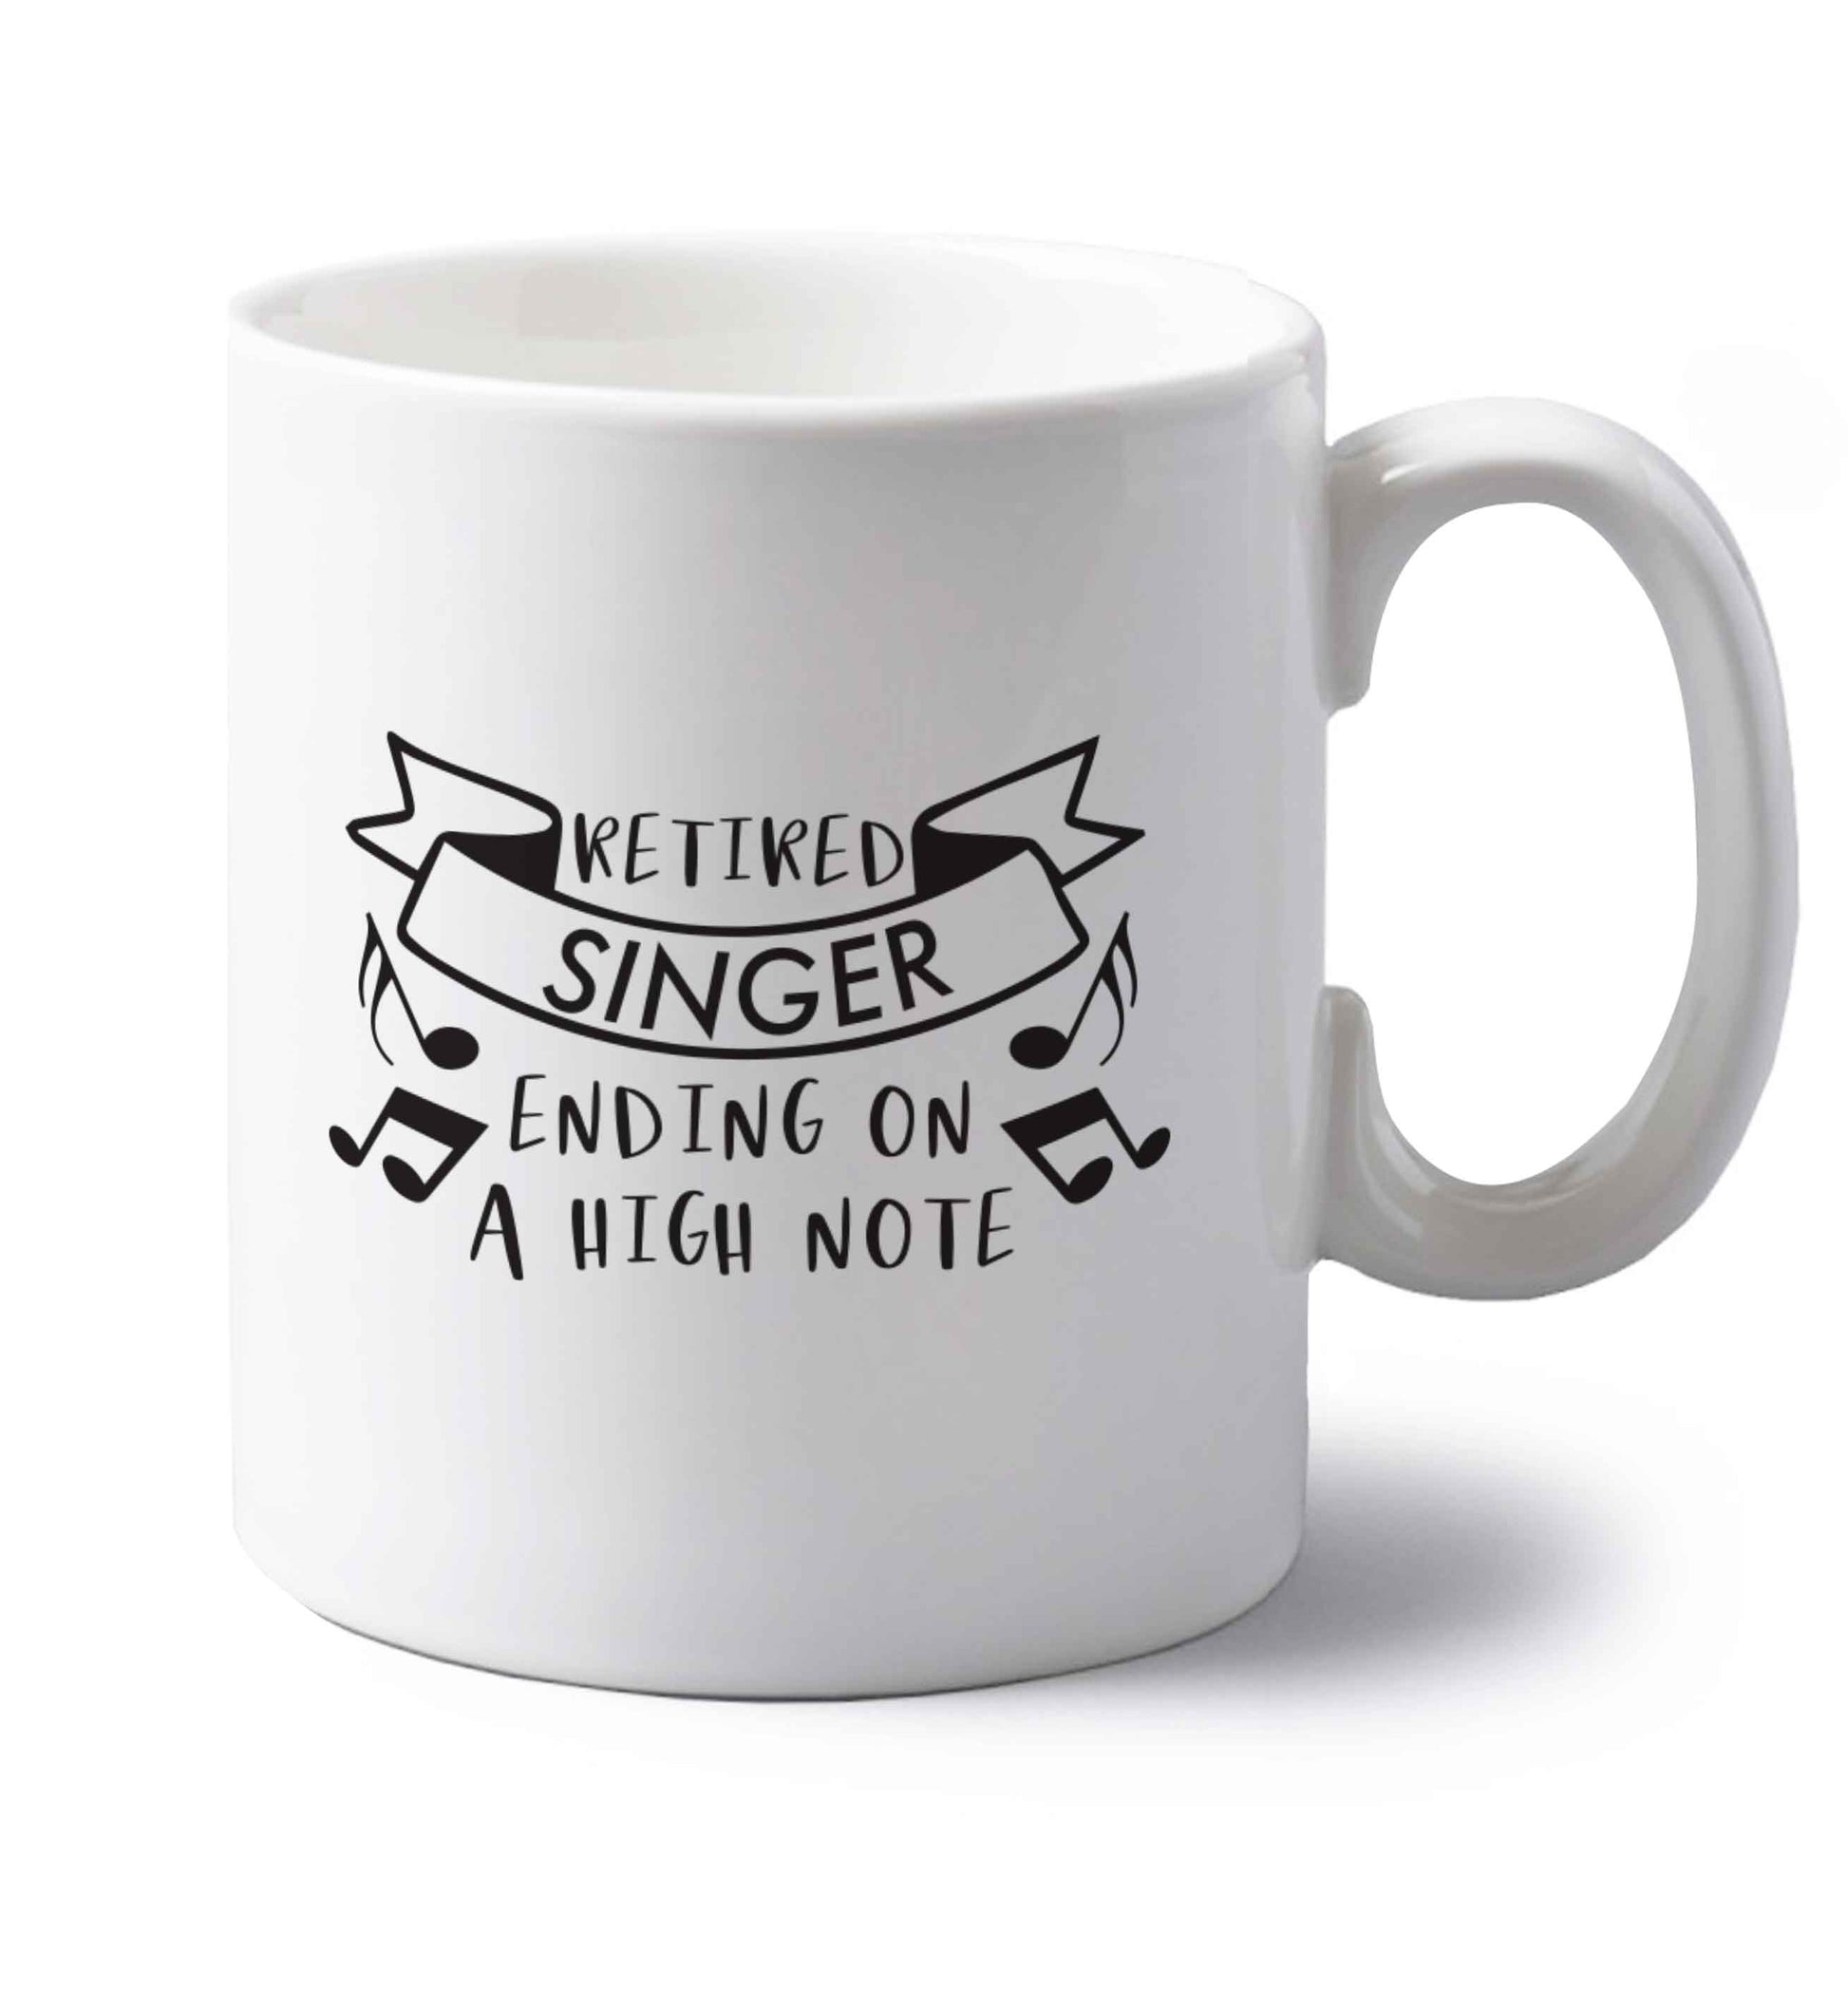 Retired singer ending on a high note left handed white ceramic mug 